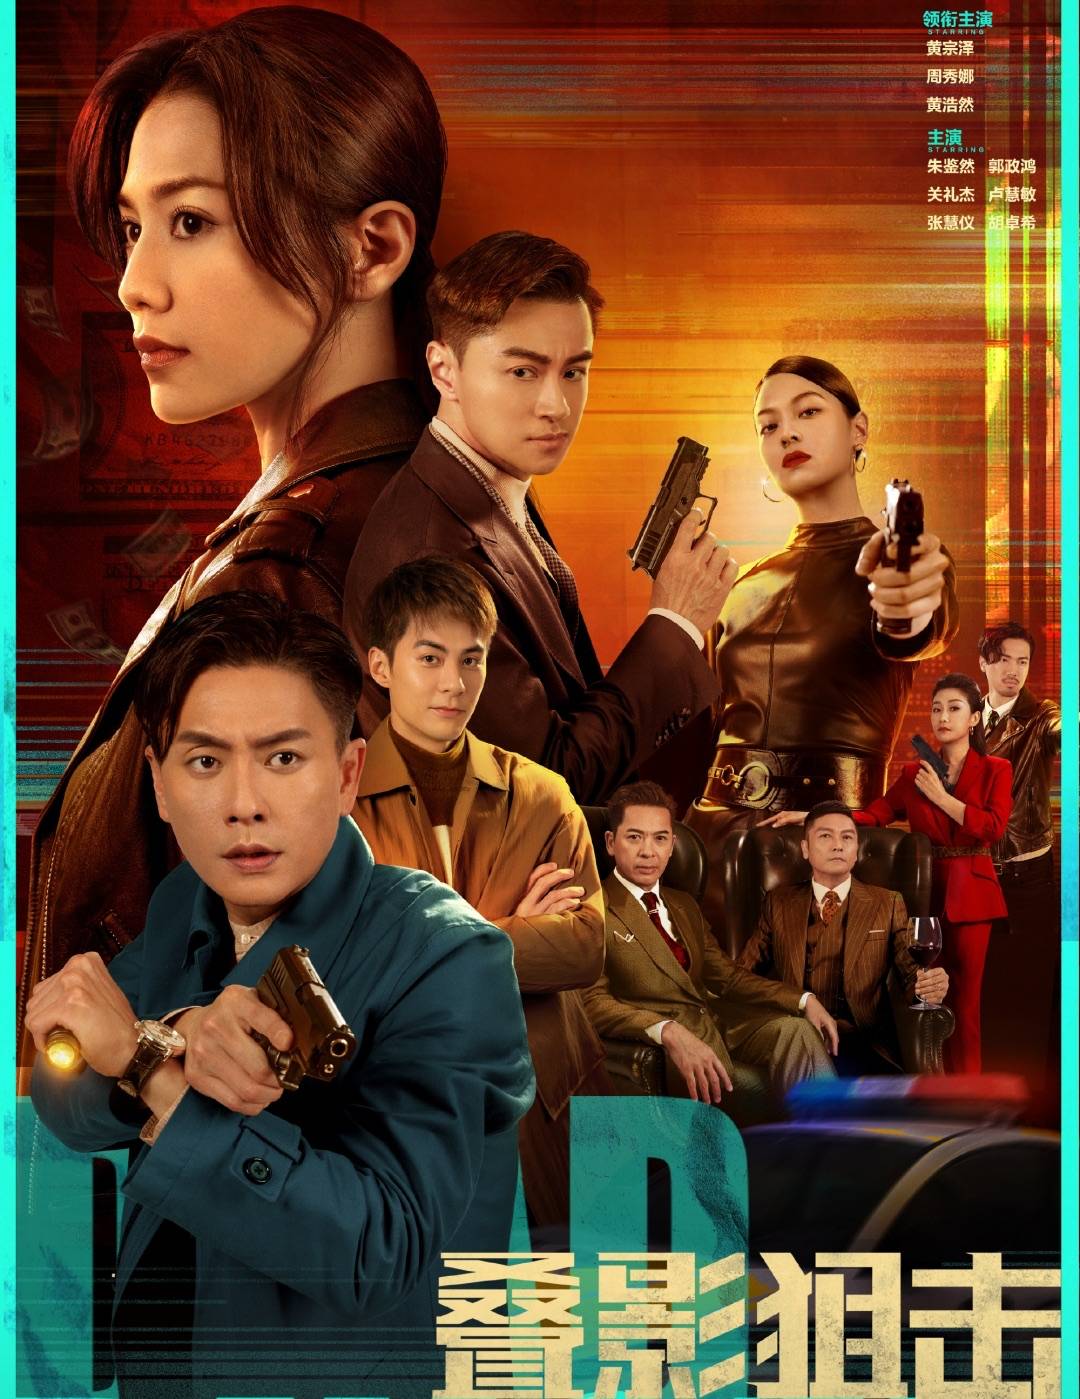 叠影狙擊 TVB第4套壓軸播出的台慶劇，竟落在非自家出品的外購港劇《疊影狙擊》上，令人意想不到。